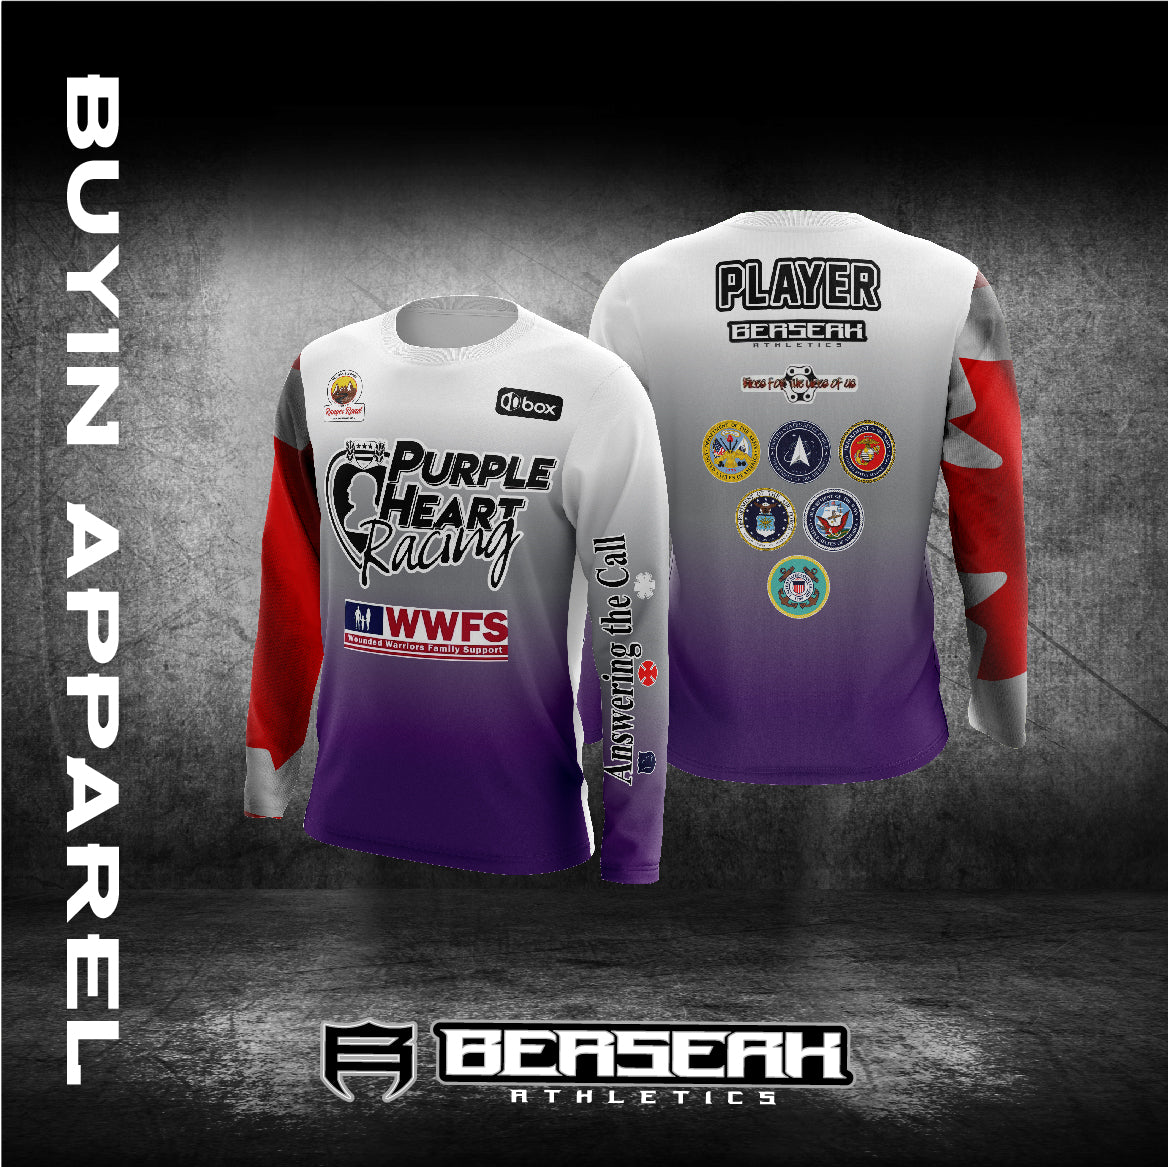 Purple Heart Racing WWFS